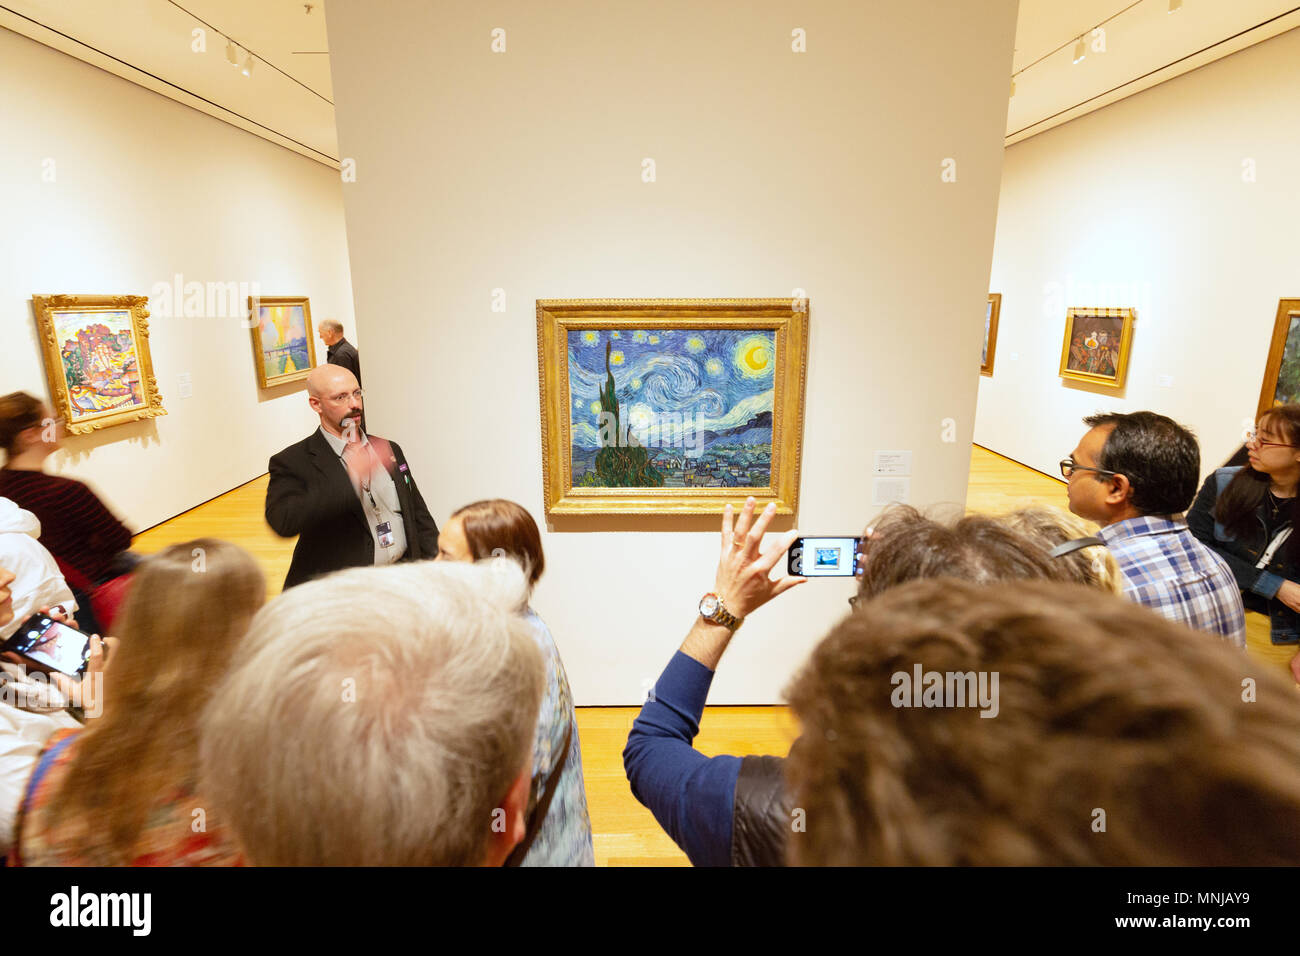 MoMA - Museum of Modern Art New York - les gens de l'intérieur à la nuit étoilée à ' ' la peinture à l'huile par Vincent Van Gogh, MoMA, New York USA Banque D'Images